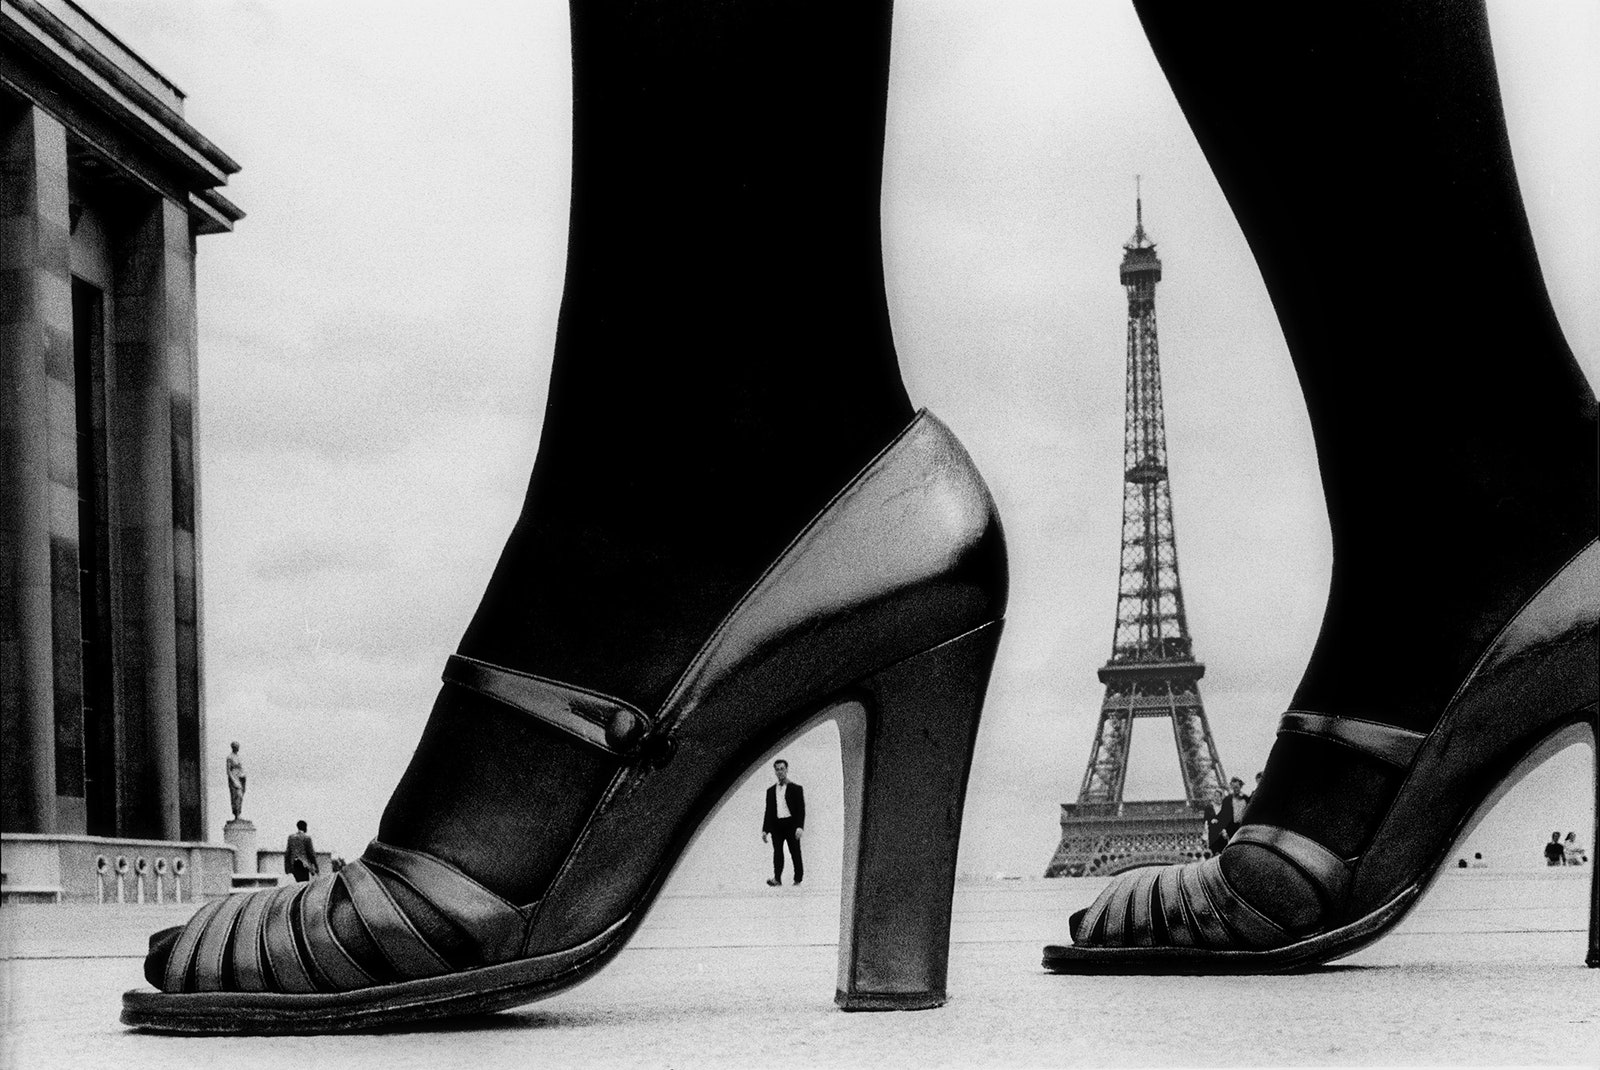 Shoes and Eiffel Tower для Stern. 1974. Париж Франция.